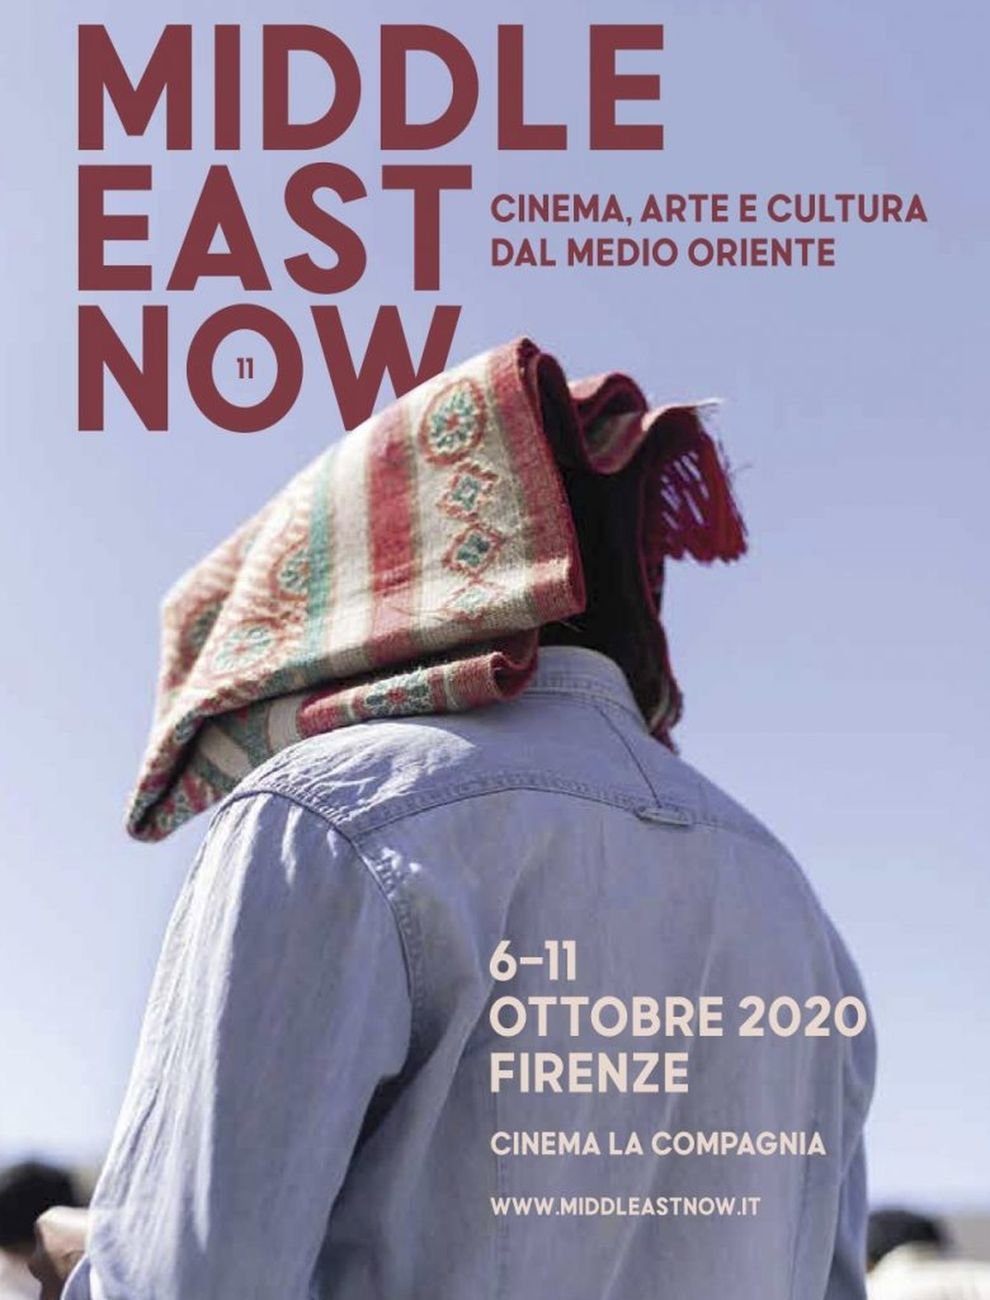 Il poster del festival Middle East Now al Cinema La Compagnia di Firenze